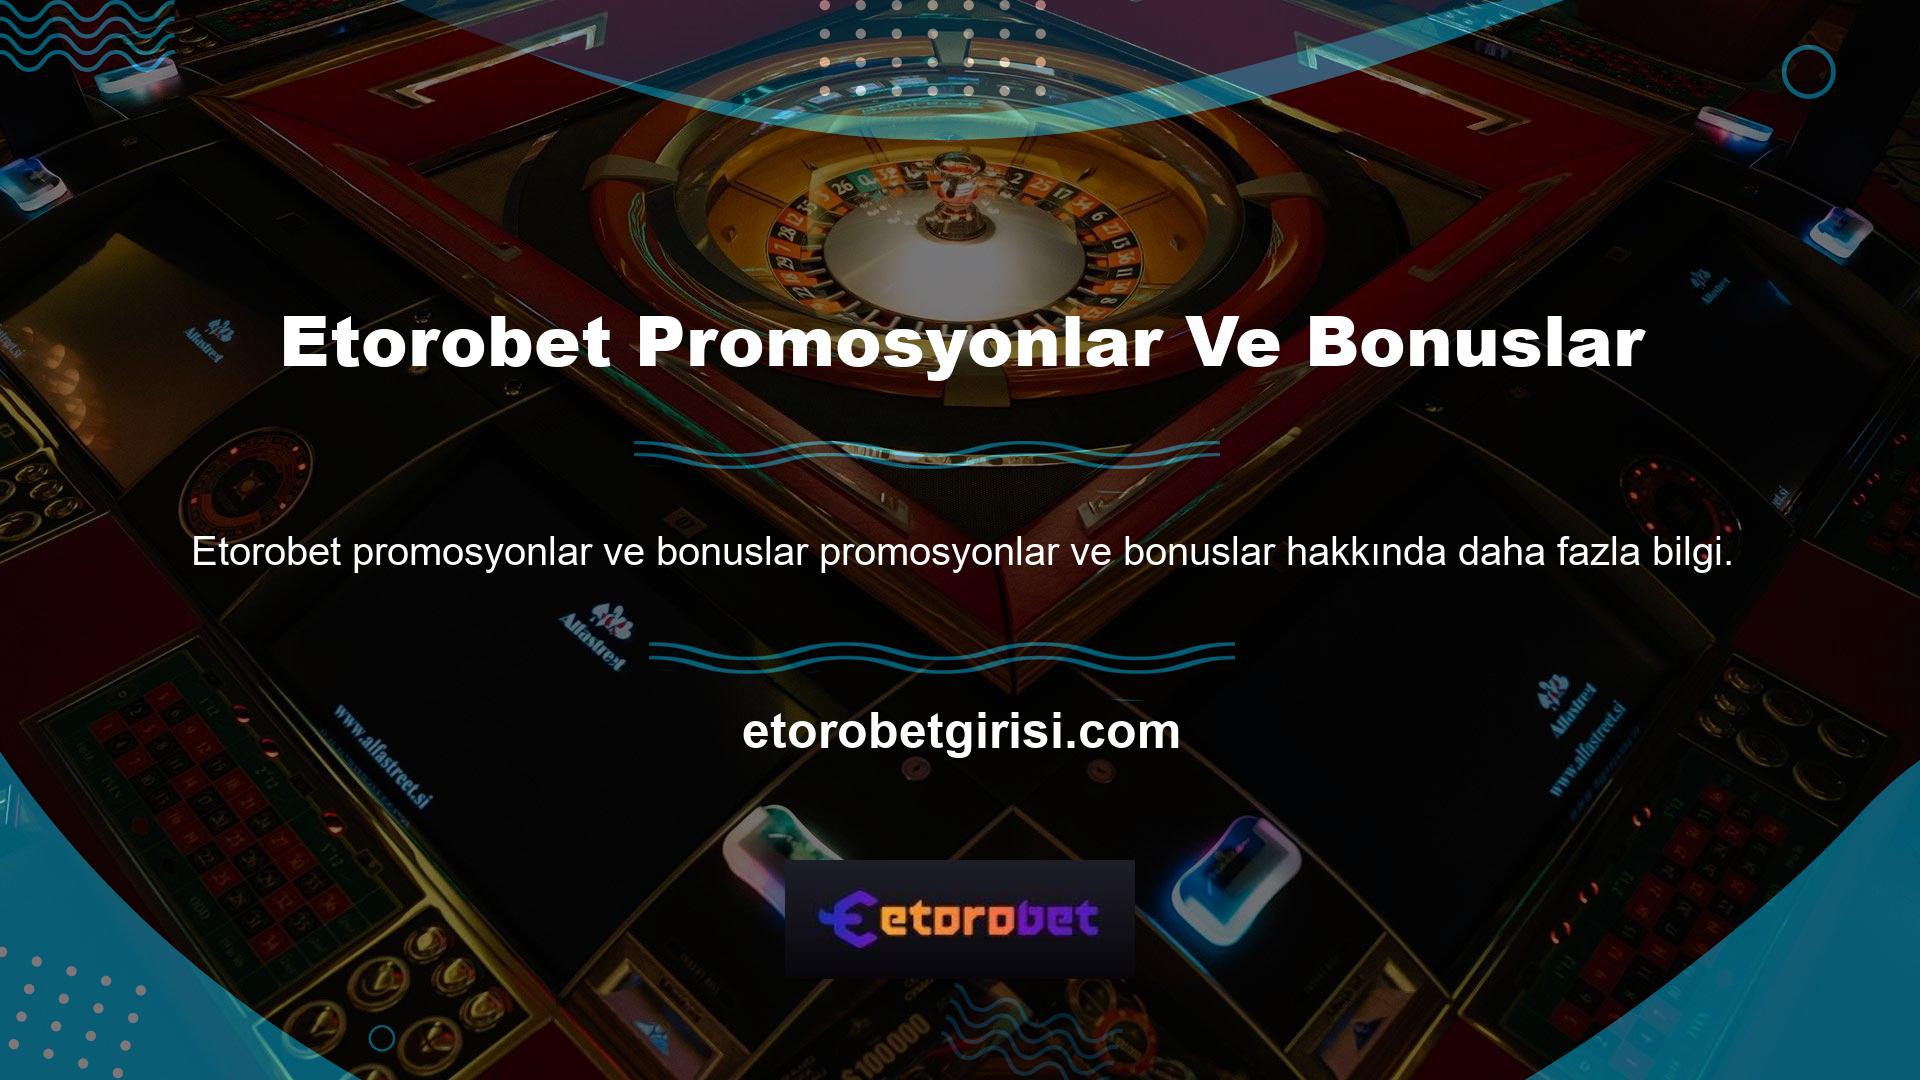 Etorobet canlı bahis sitesinde belirli programlar ve oyun hizmetleri